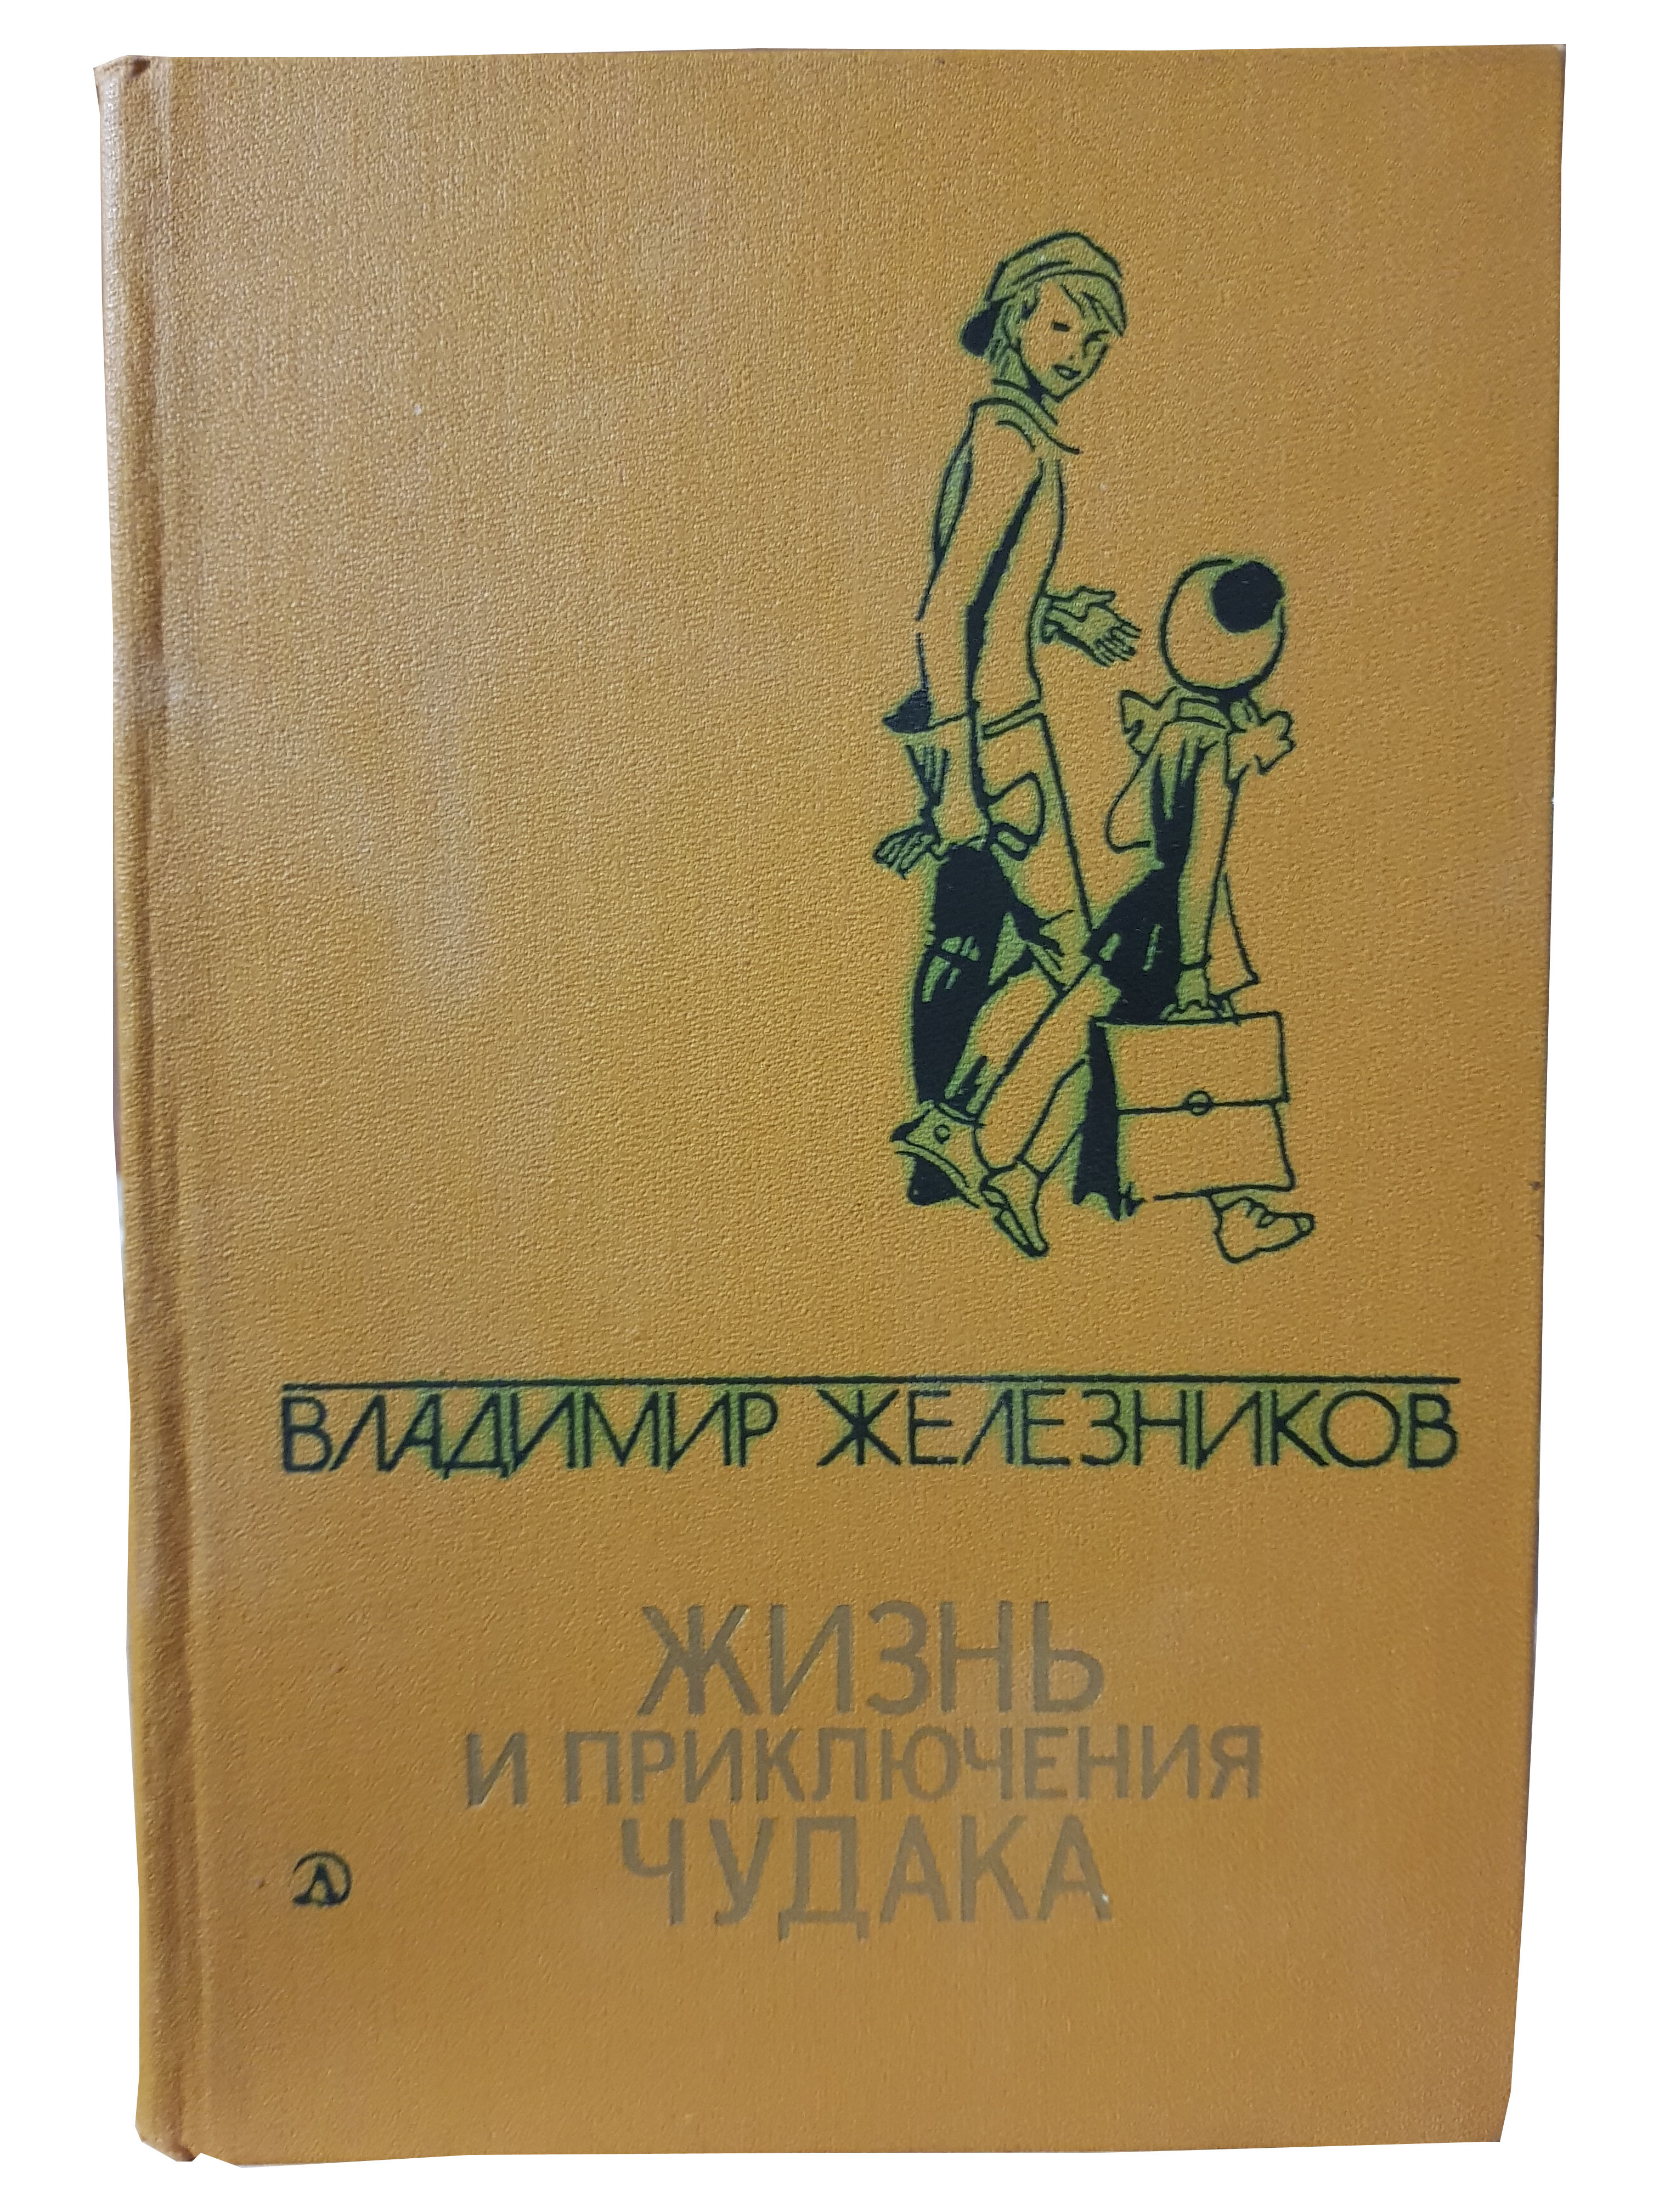 Железников В.К. (Избранные произведения в двух томах. Том 2).jpg